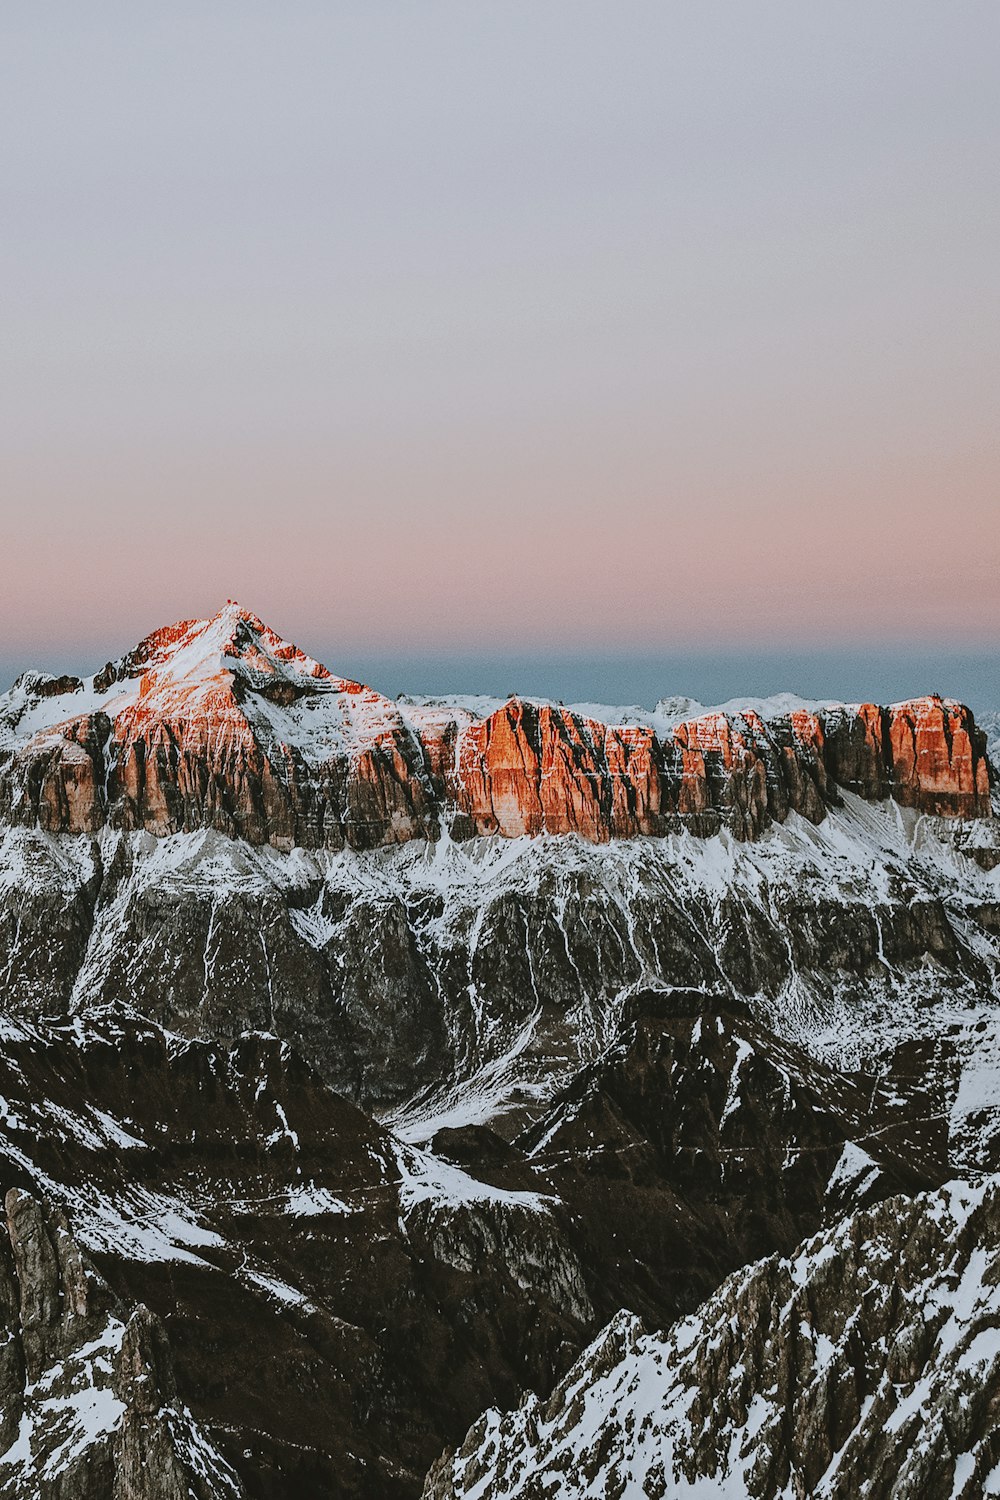 Fotografía de montañas cubiertas de nieve durante el día